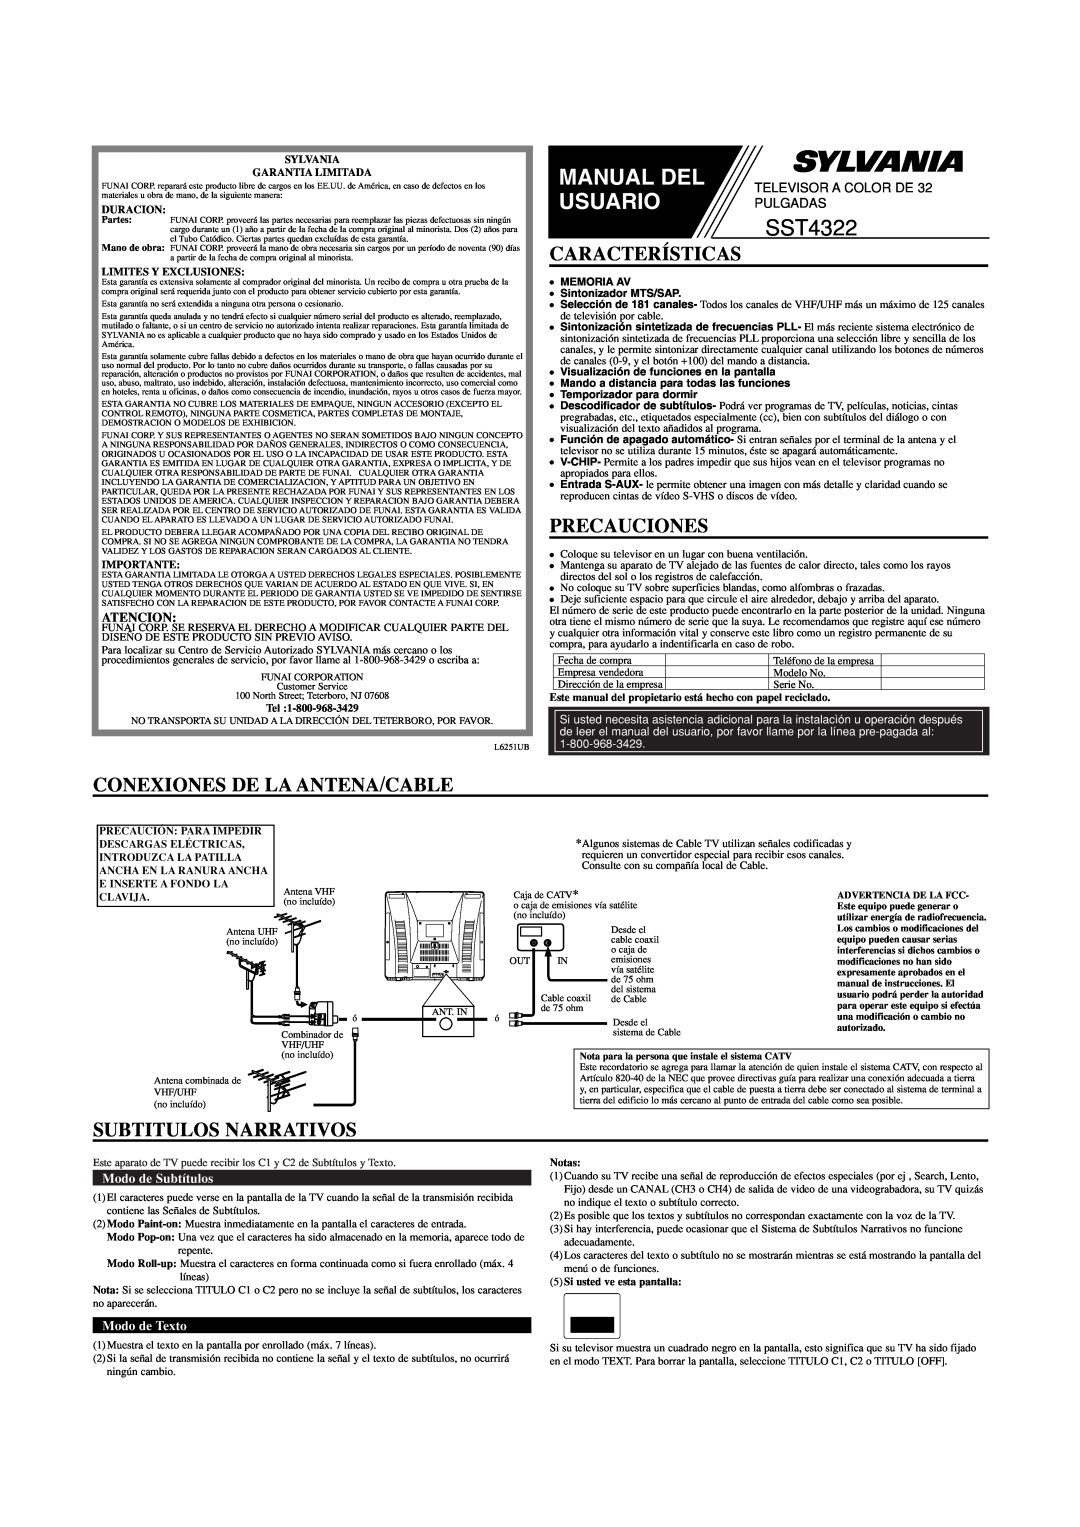 Sylvania SST4322 Características, Precauciones, Conexiones De La Antena/Cable, Subtitulos Narrativos, Atencion, Manual Del 